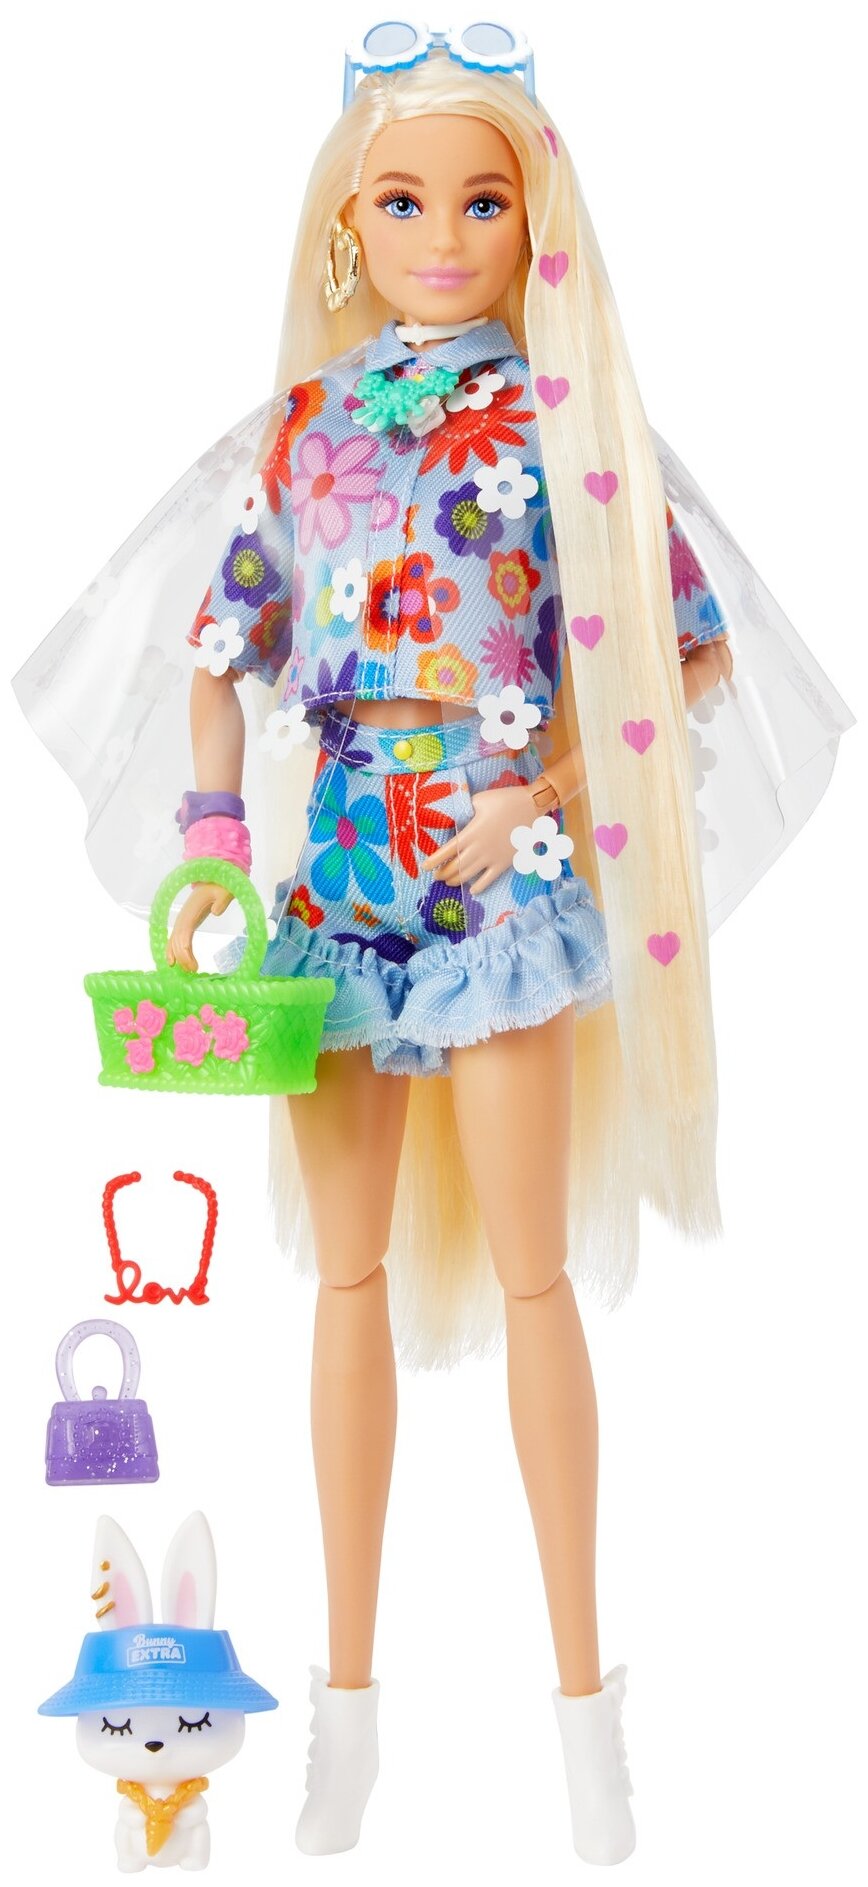 Barbie Кукла Экстра в одежде с цветочным принтом - фото №1